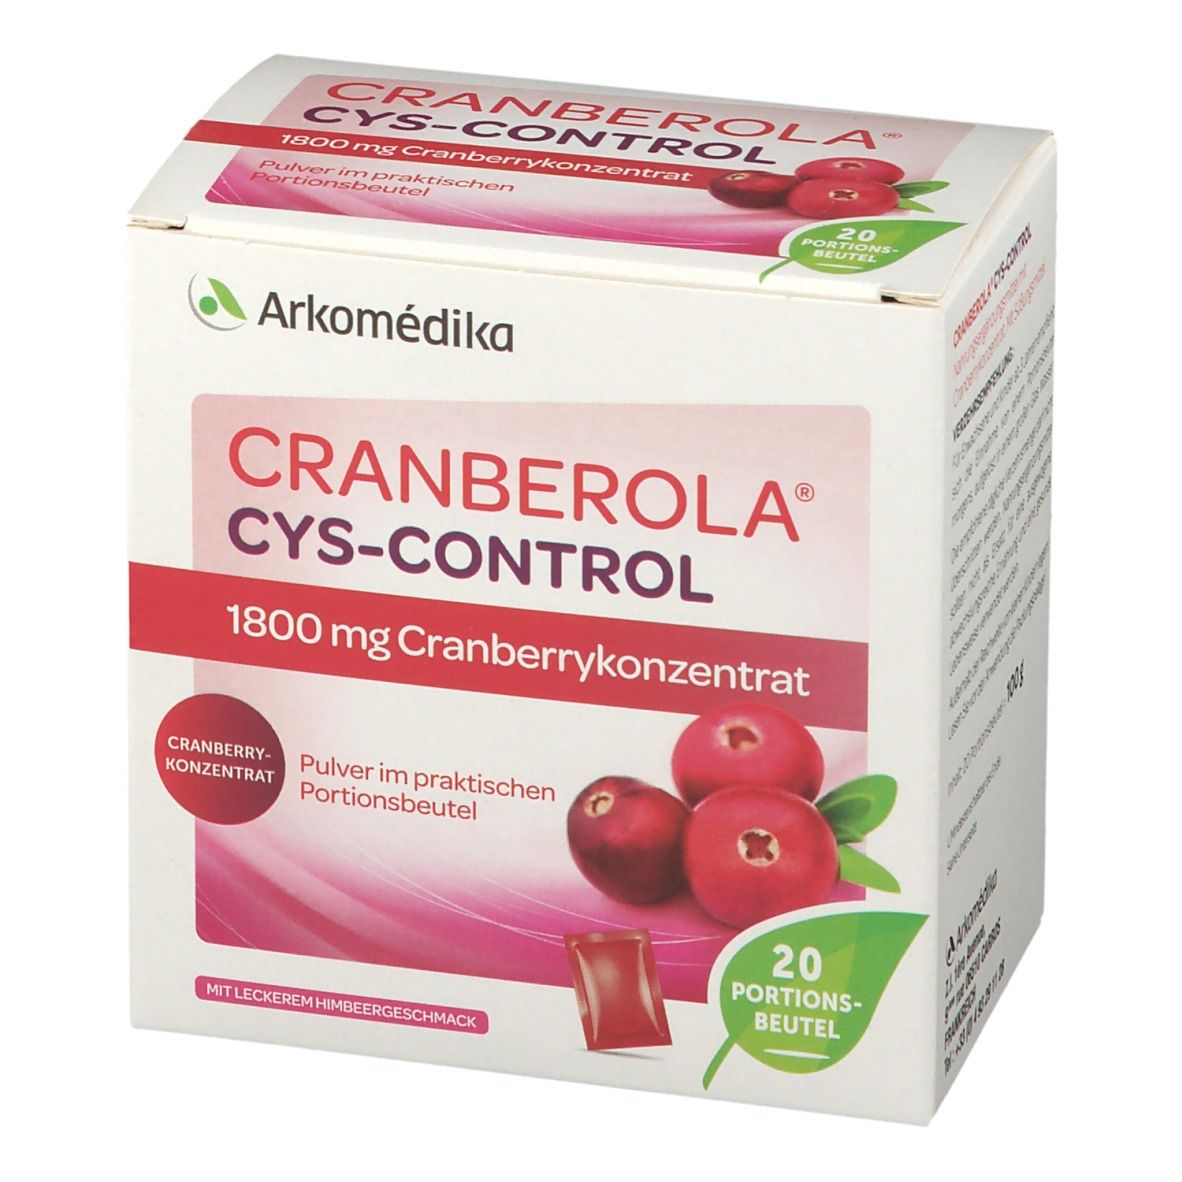 Cranberola® Cys Control Pulver